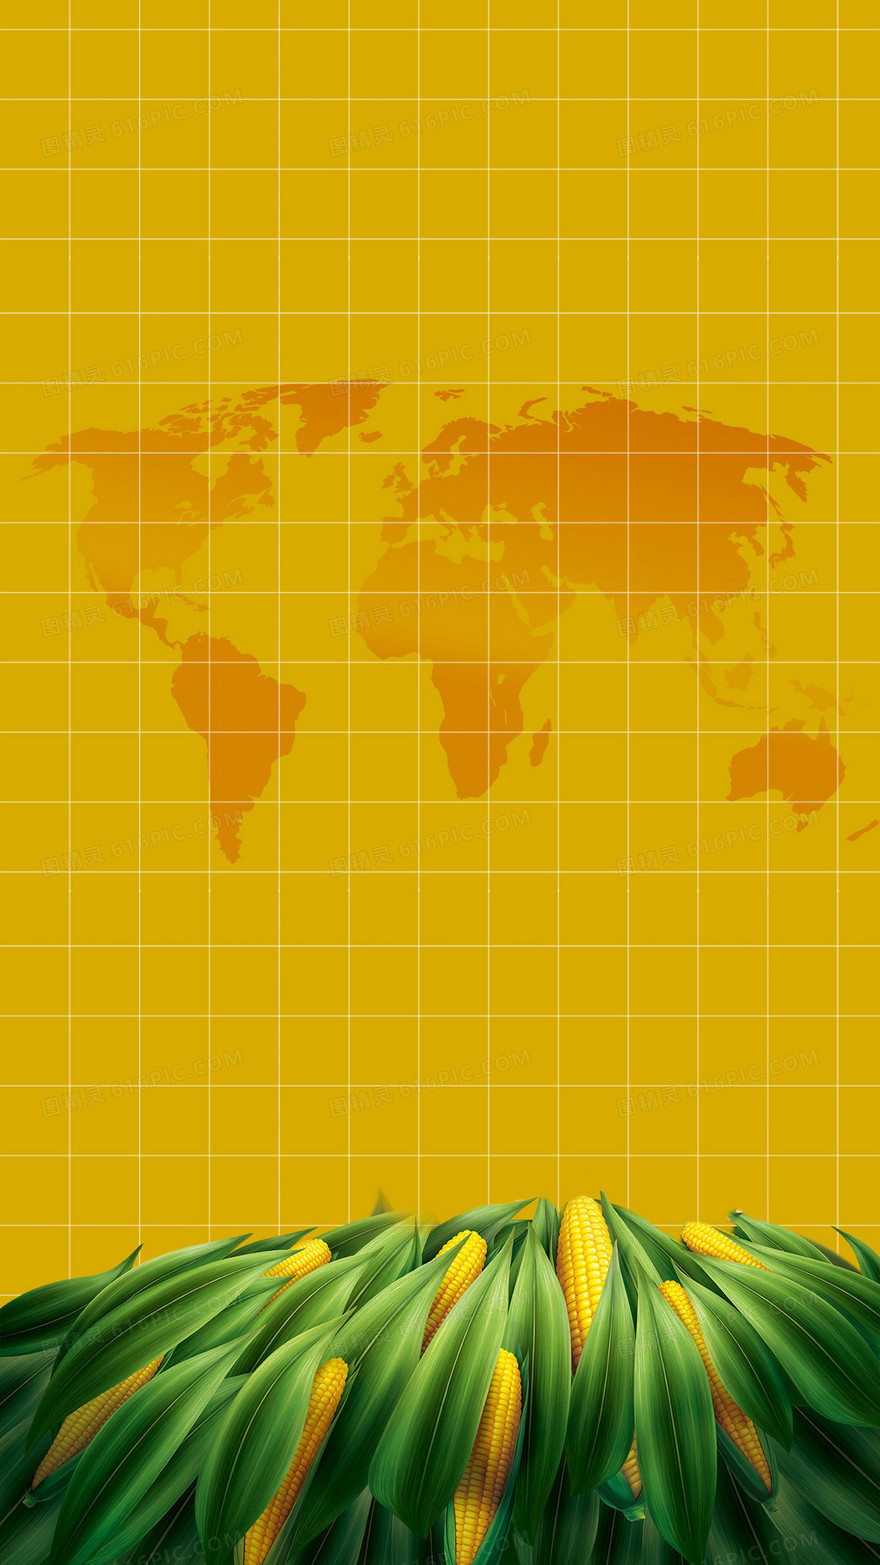 农业卡通玉米地图剪影H5背景素材